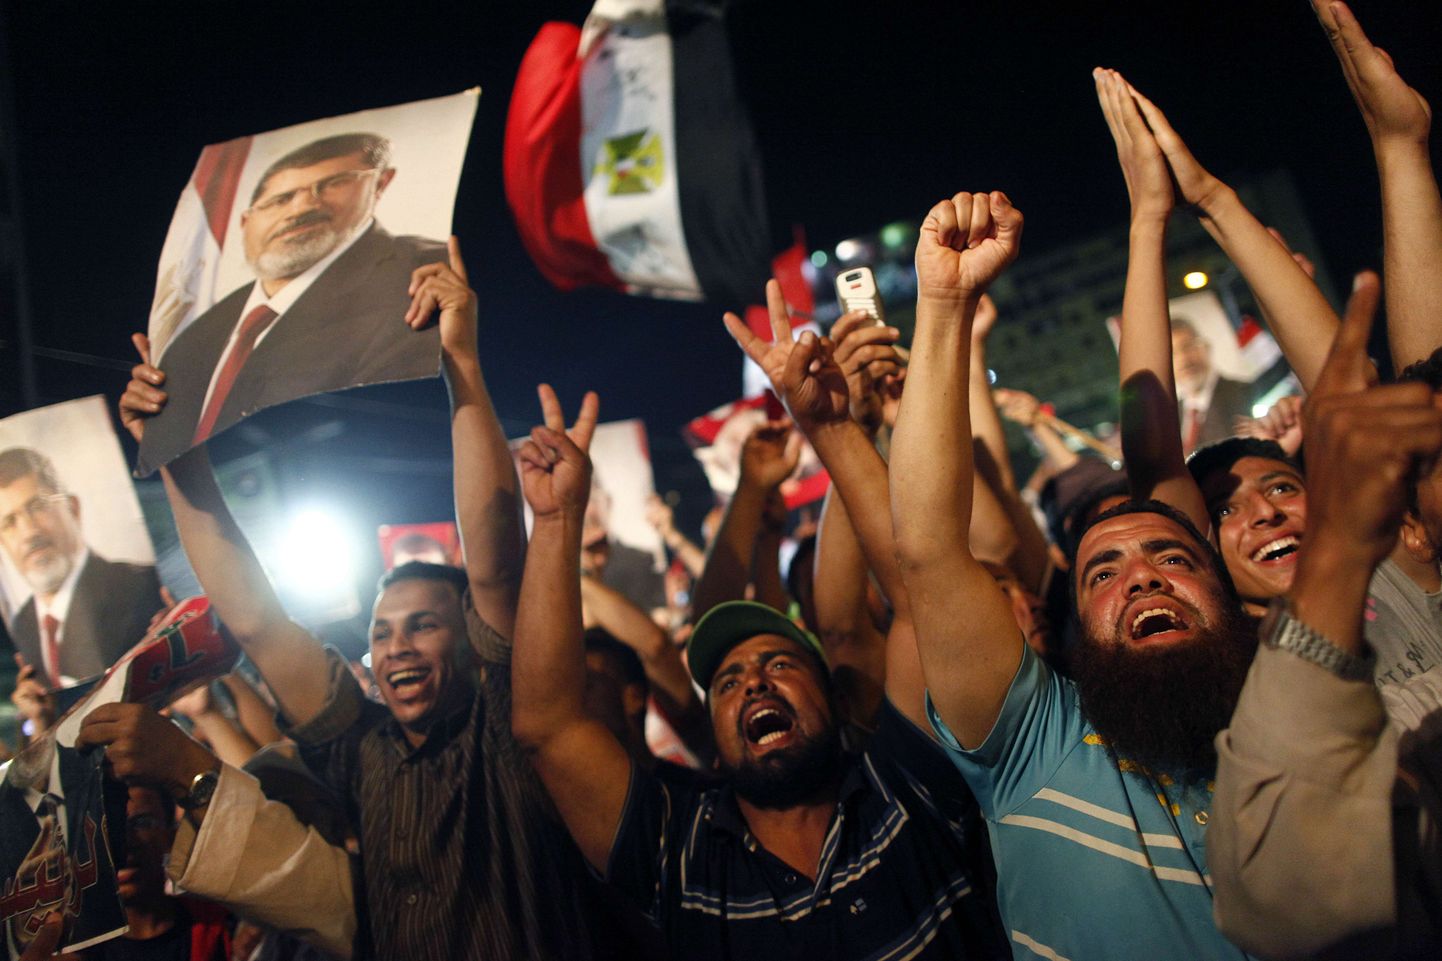 В центре Каира вспыхнули столкновения между сторонниками свергнутого президента Мухаммеда Мурси и его противниками.